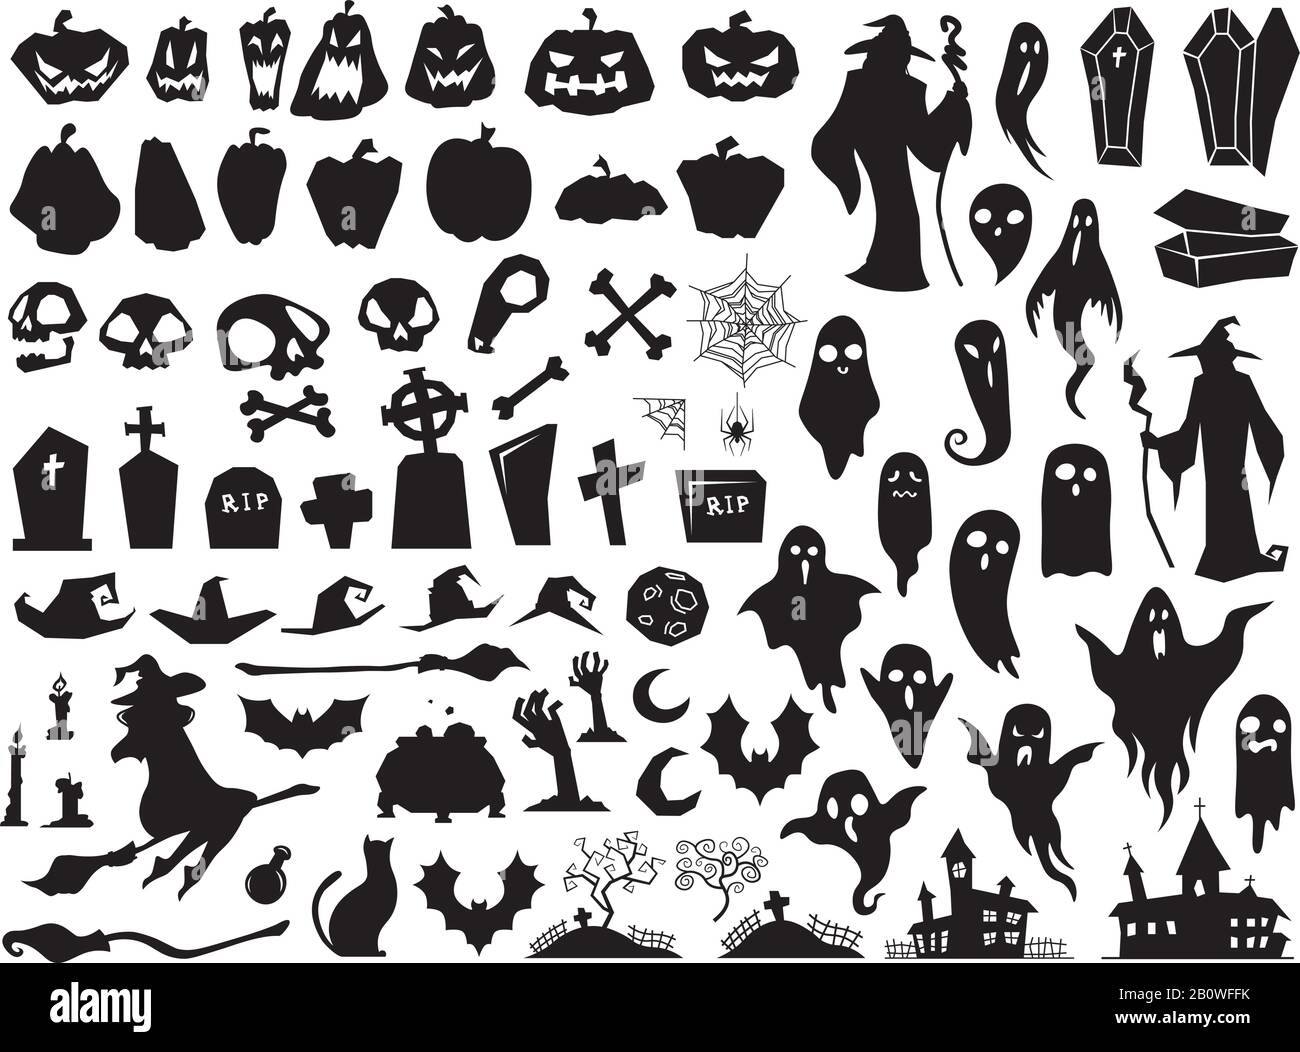 Halloween Silhouetten. Spoky böse Hexe, gruseliger Grabsarg und Zauberersilhouette. Kürbis-, Spinne- und Geistervektor-Illustrationssatz Stock Vektor